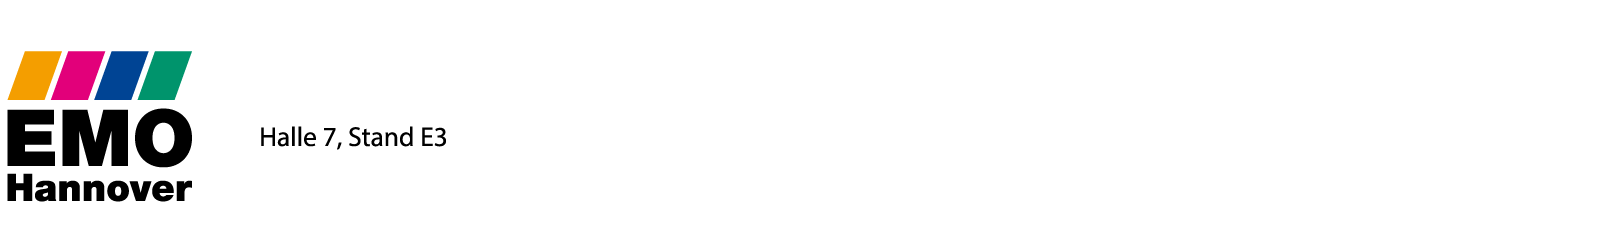 EMO 2019 Logo